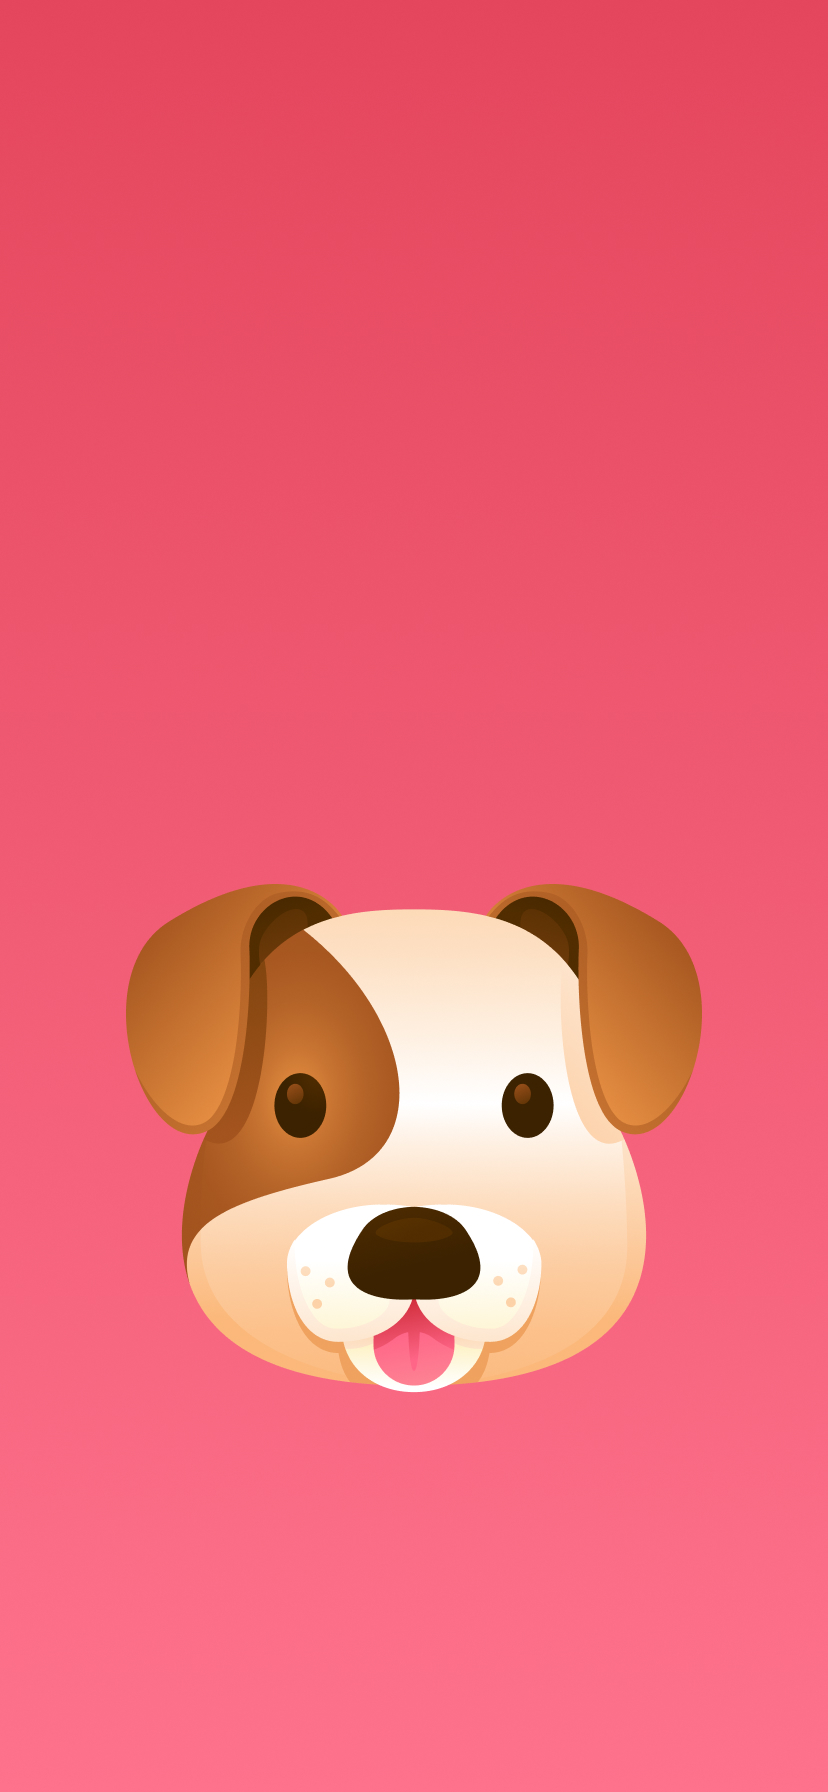 Dog Face Emoji Wallpaper | Wallaland